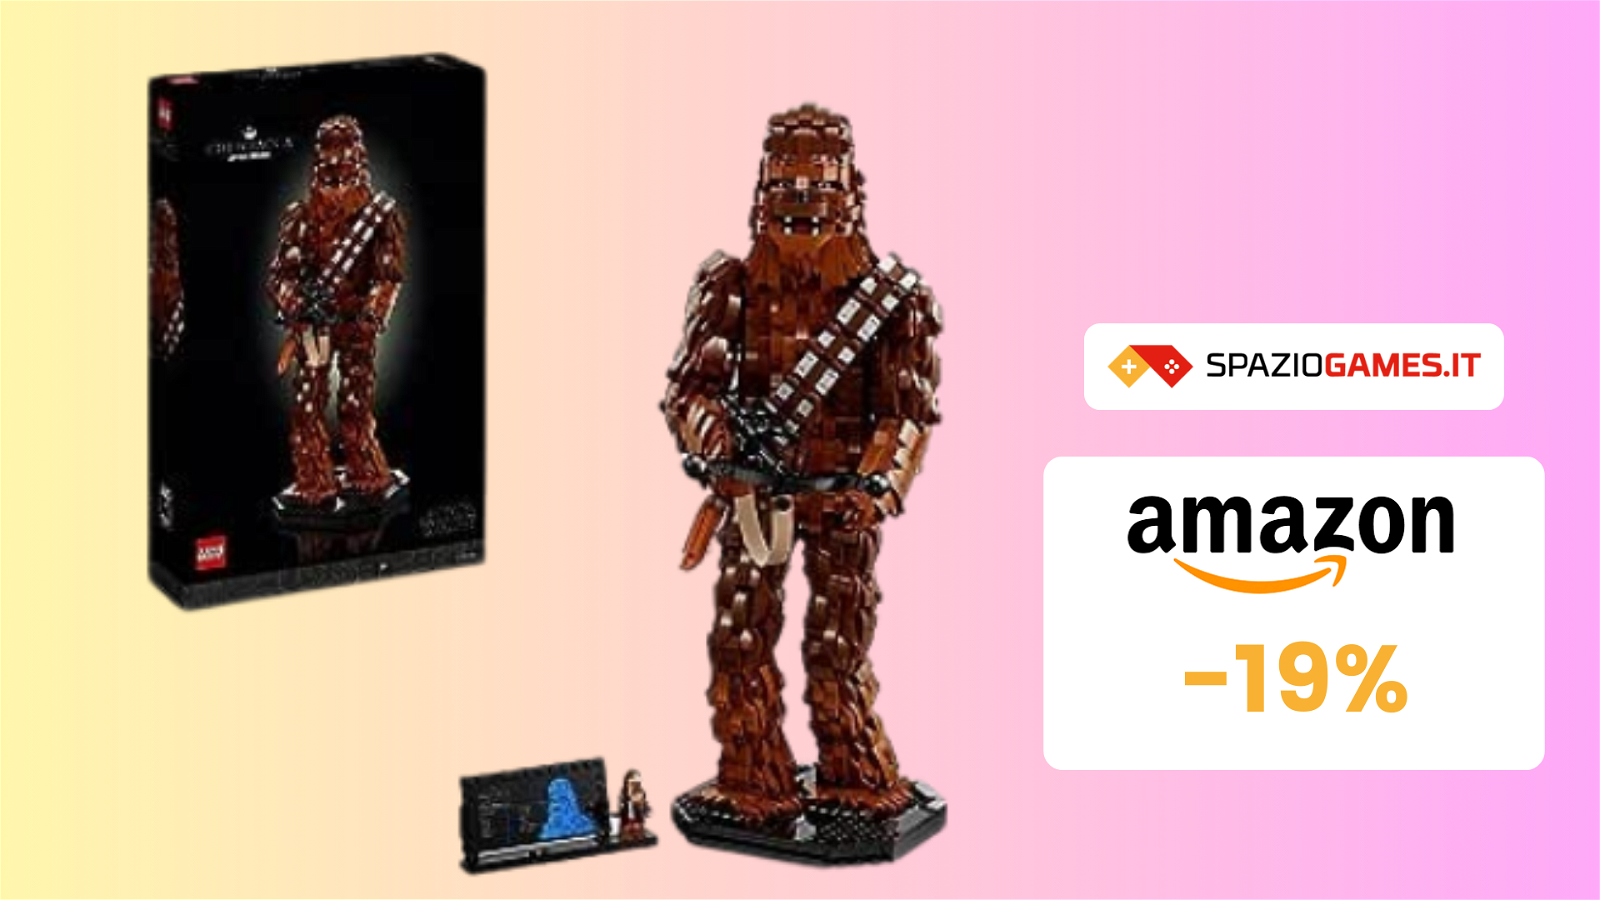 SPLENDIDO Chewbacca LEGO in offerta a 170€!